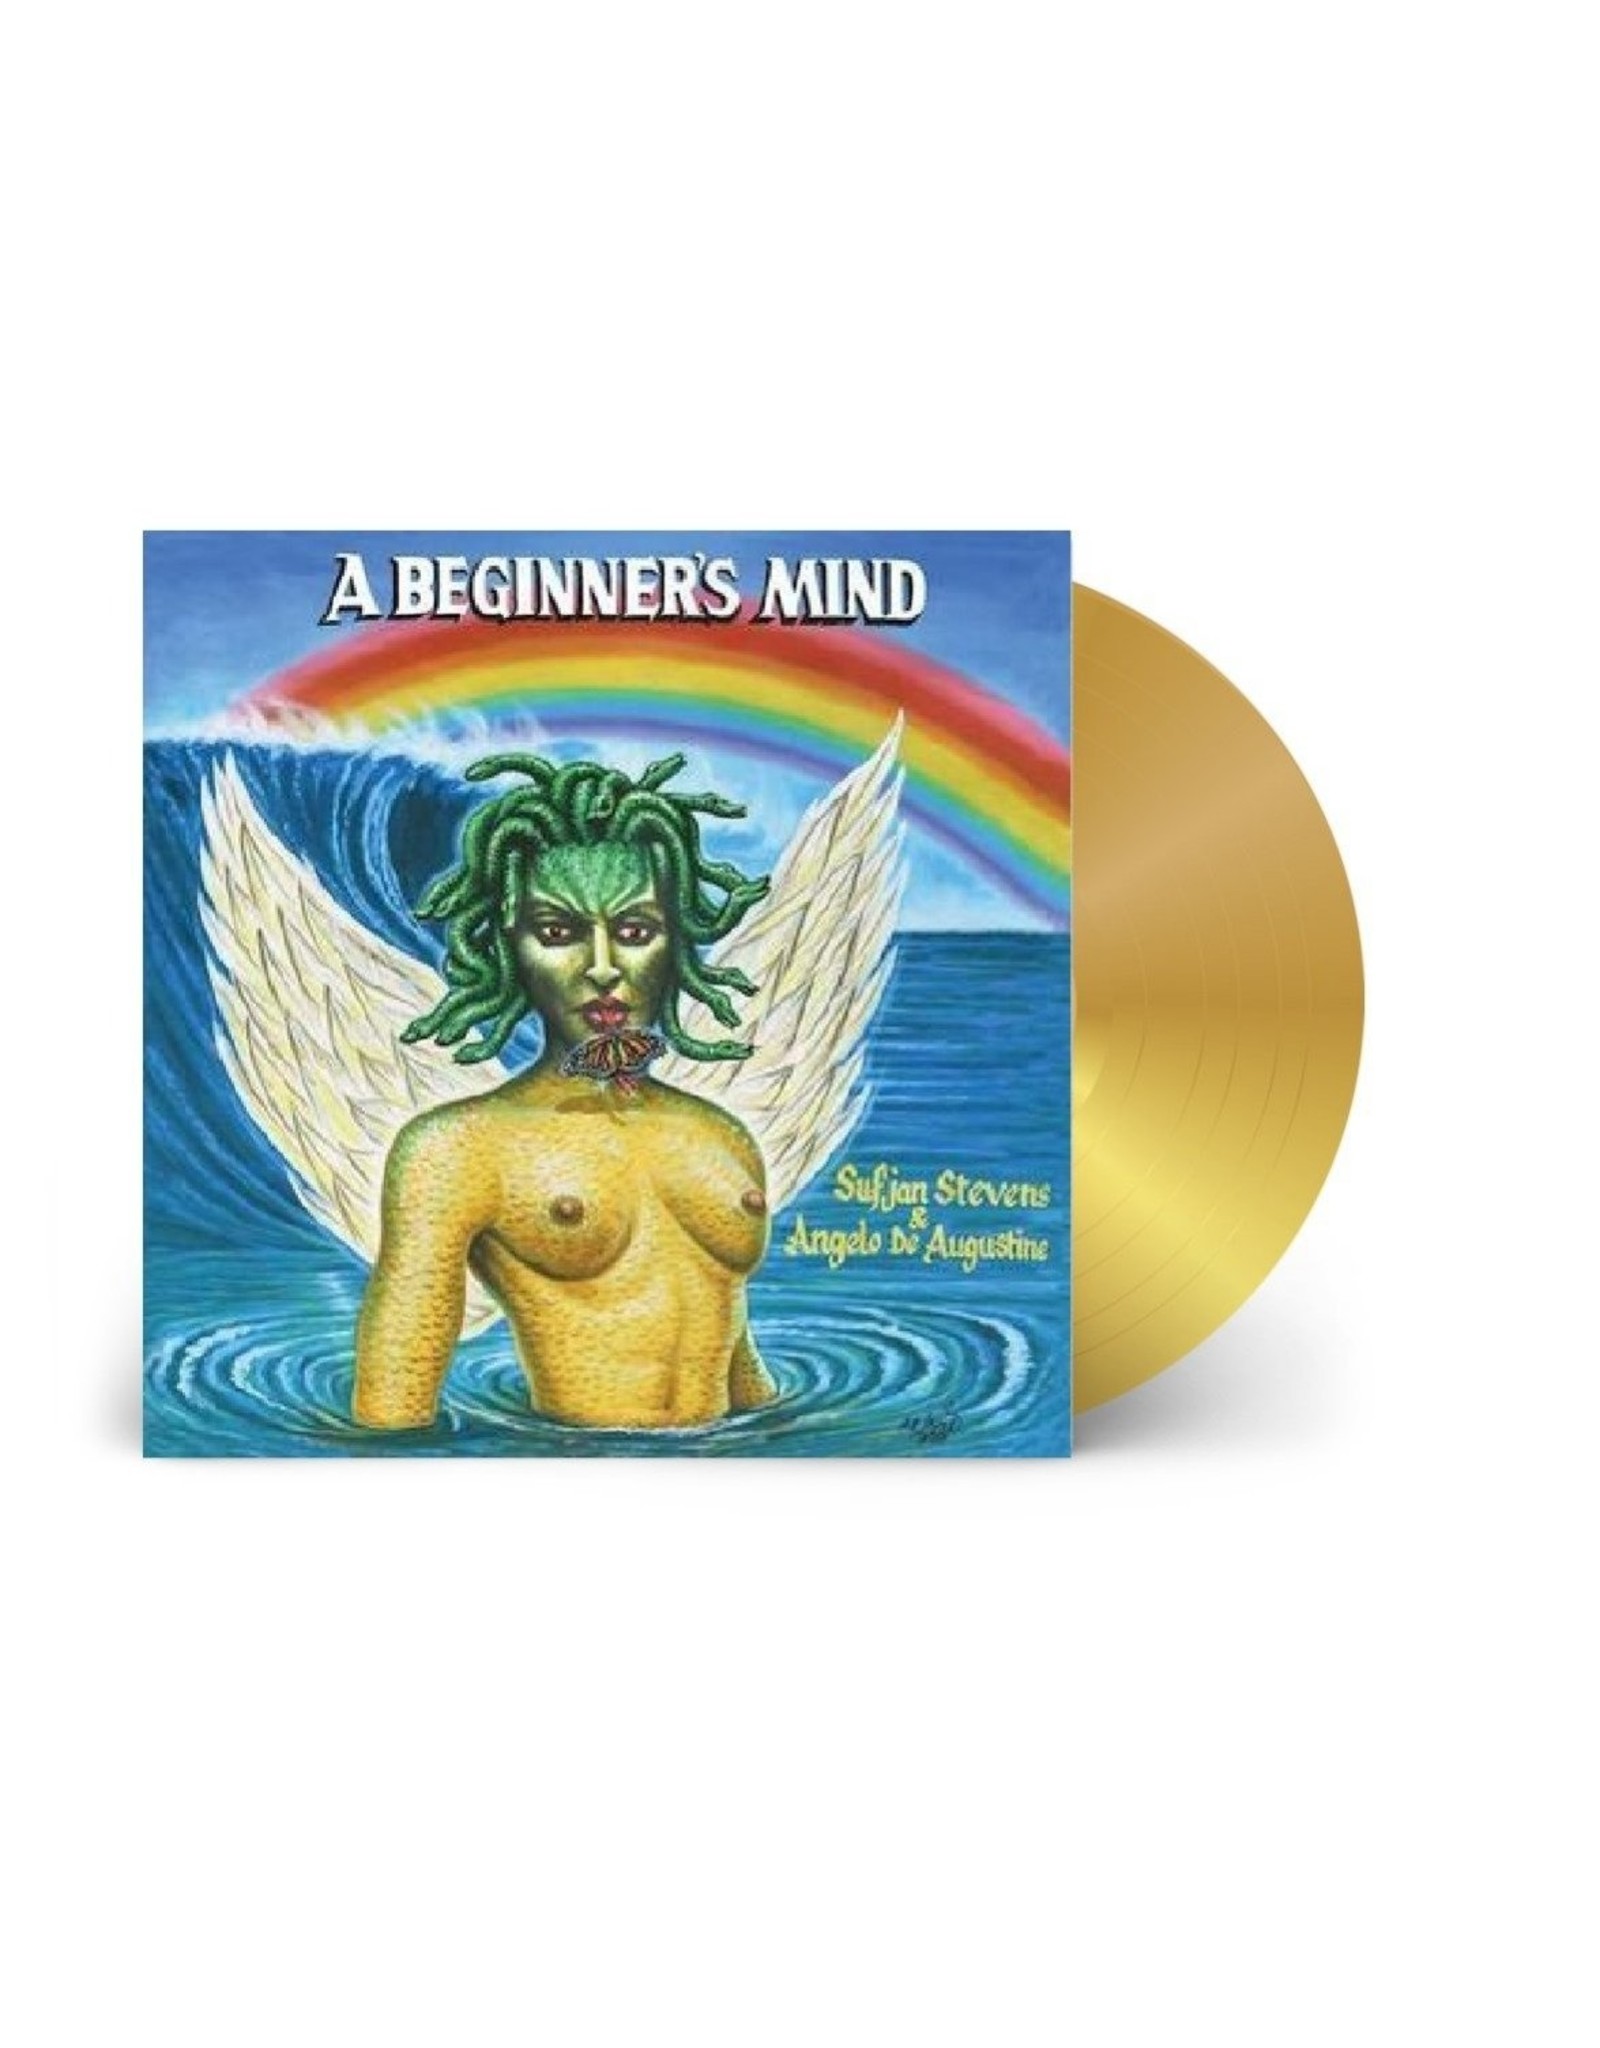 Sufjan Stevens / Angelo De Augustine - A Beginner's Mind (Gold Vinyl)